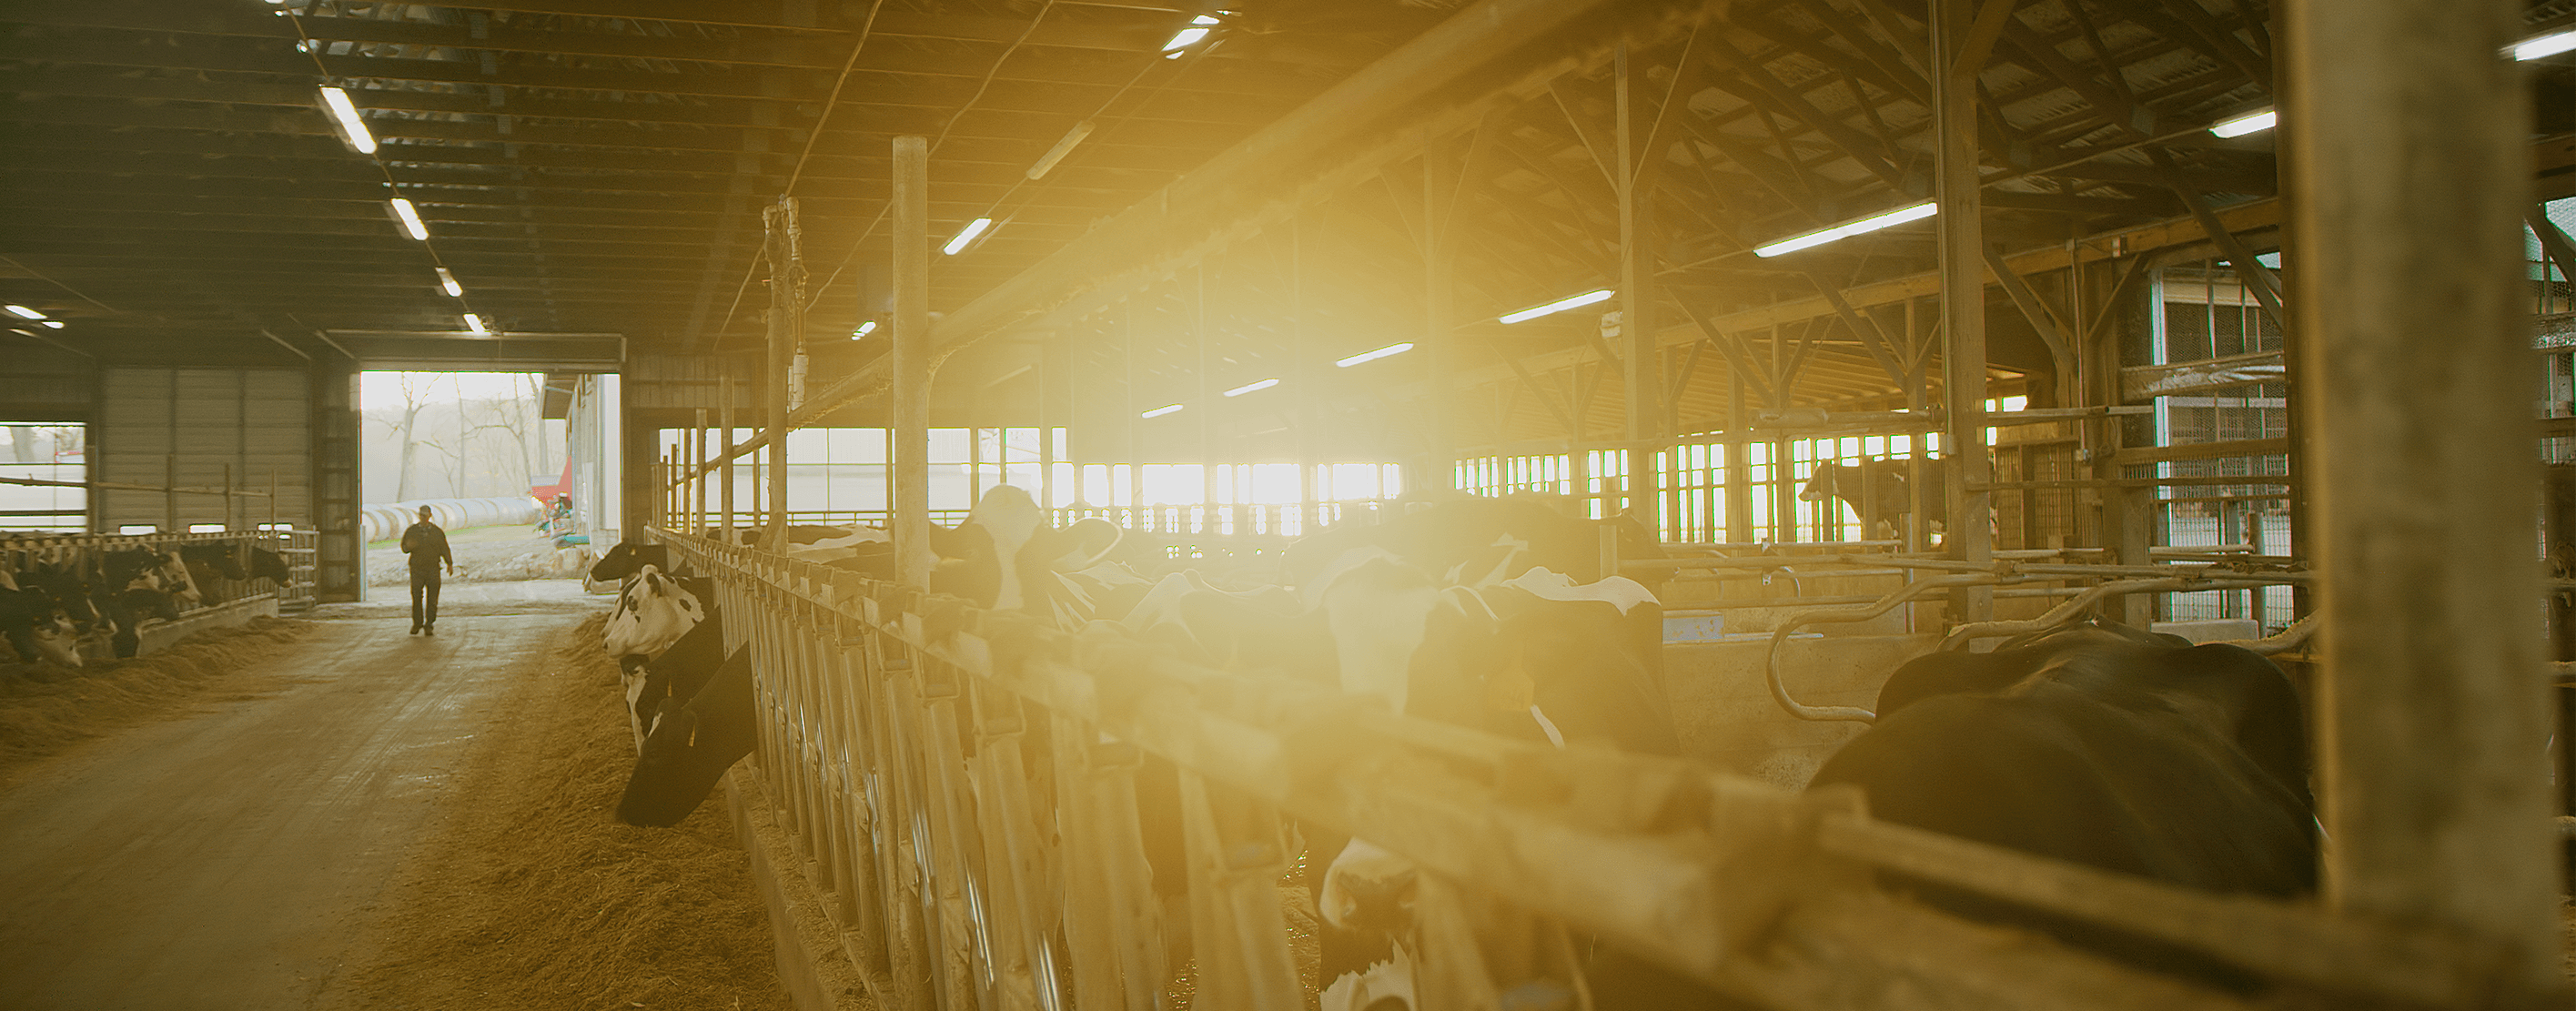 A farmer walking into a dairy barn